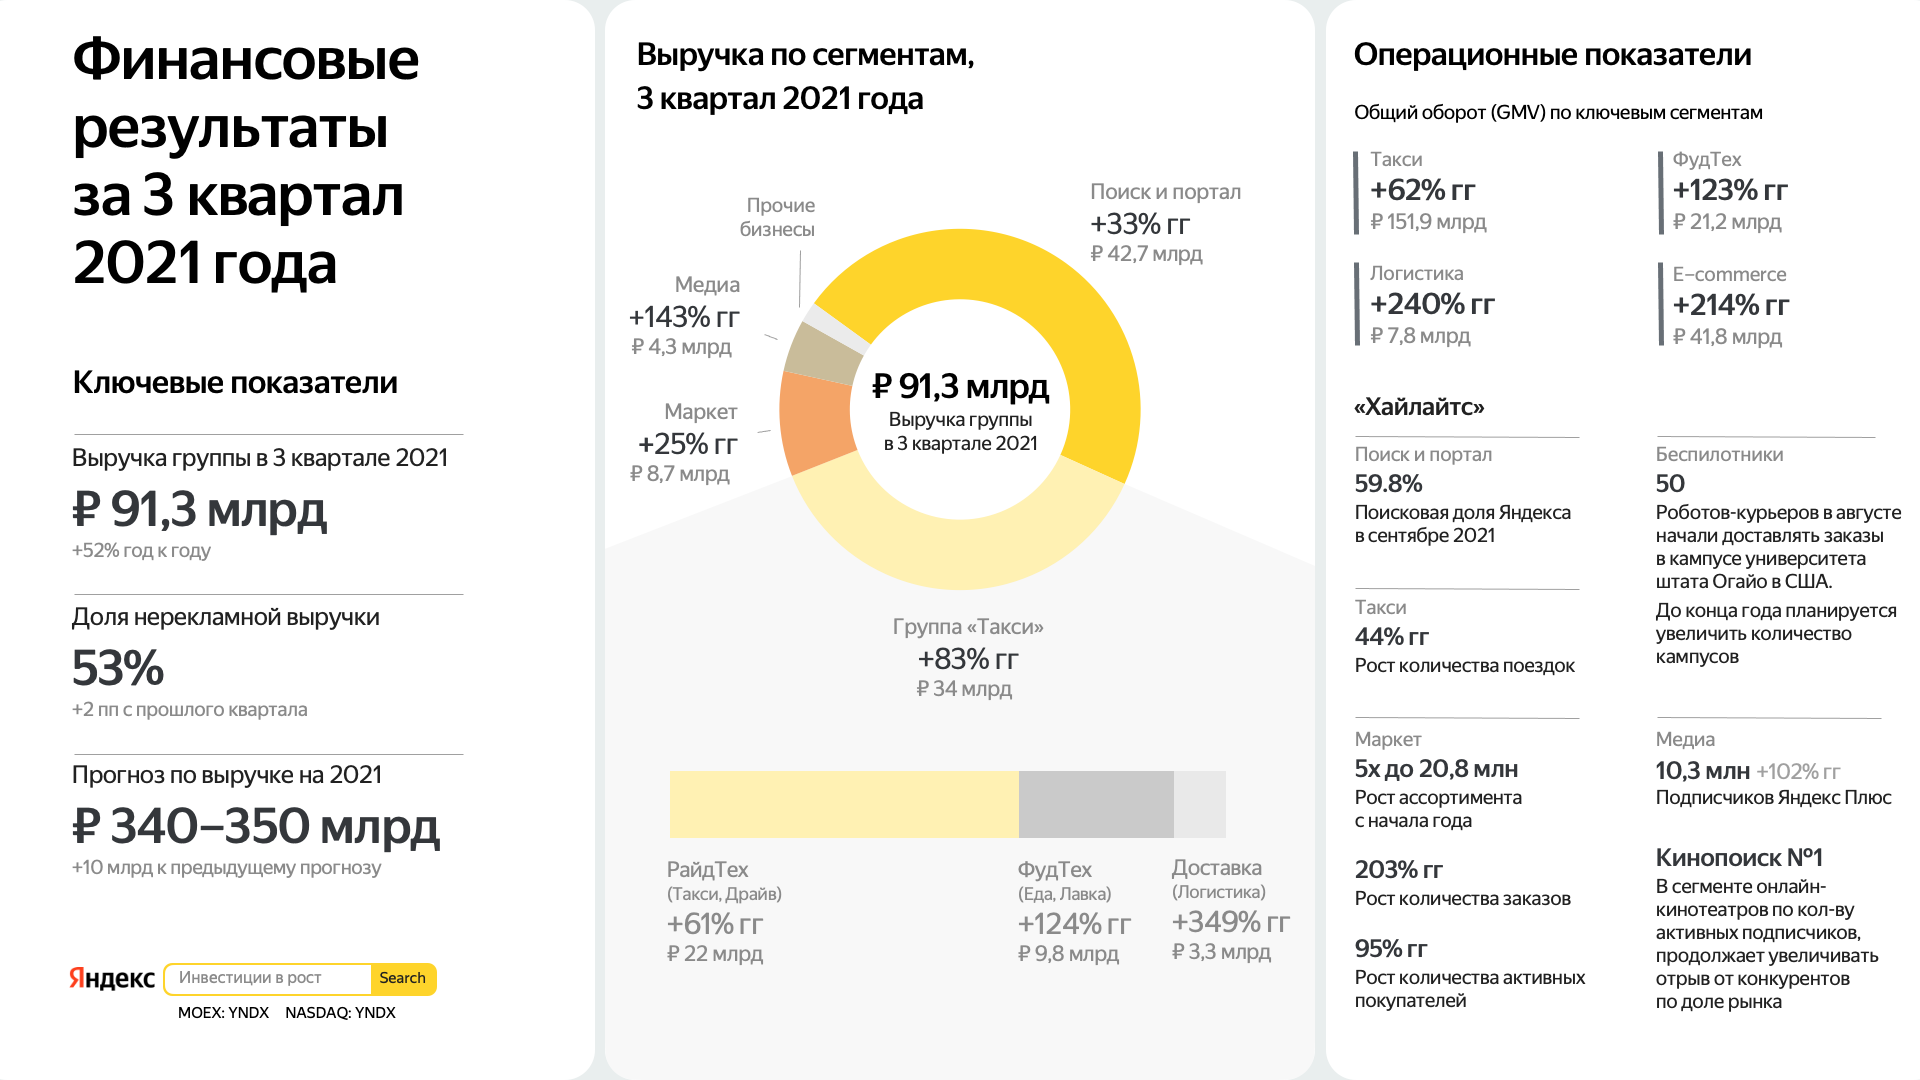 Выручка группы компаний Яндекс за 3 квартал 2021 года составила 91,3 млрд рублей